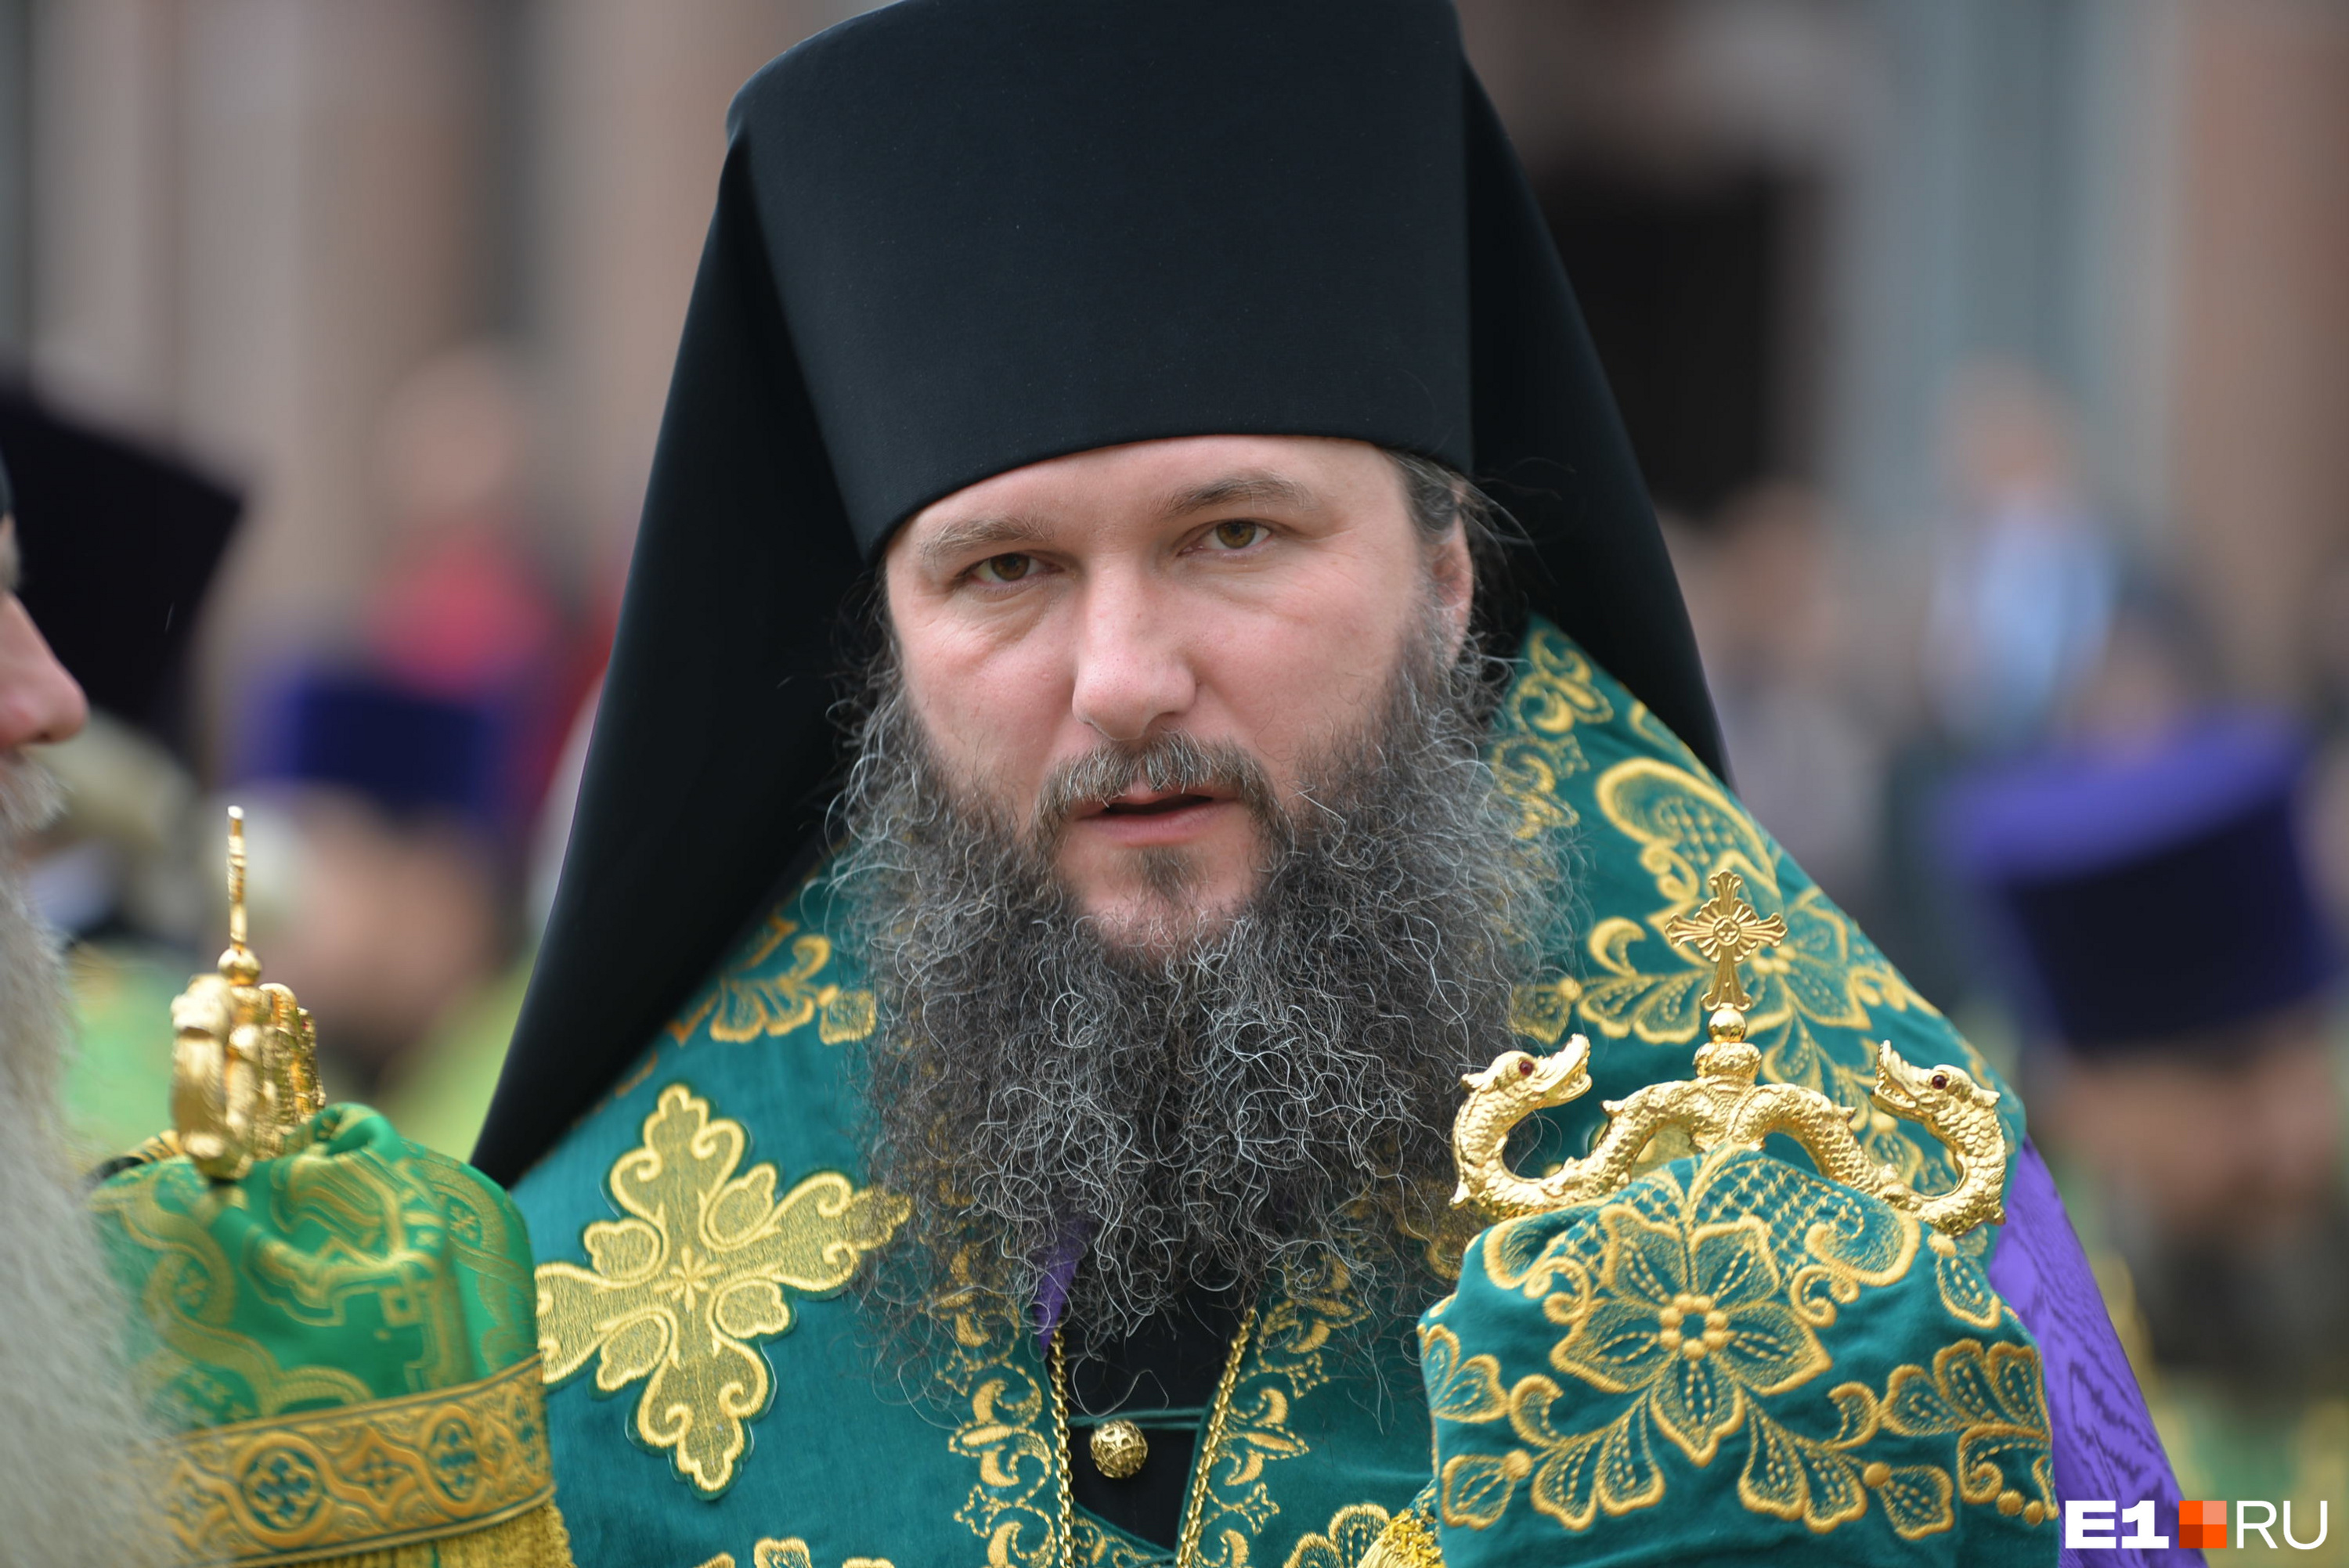 «Власть должна действовать». Екатеринбургский митрополит потребовал запретить аборты